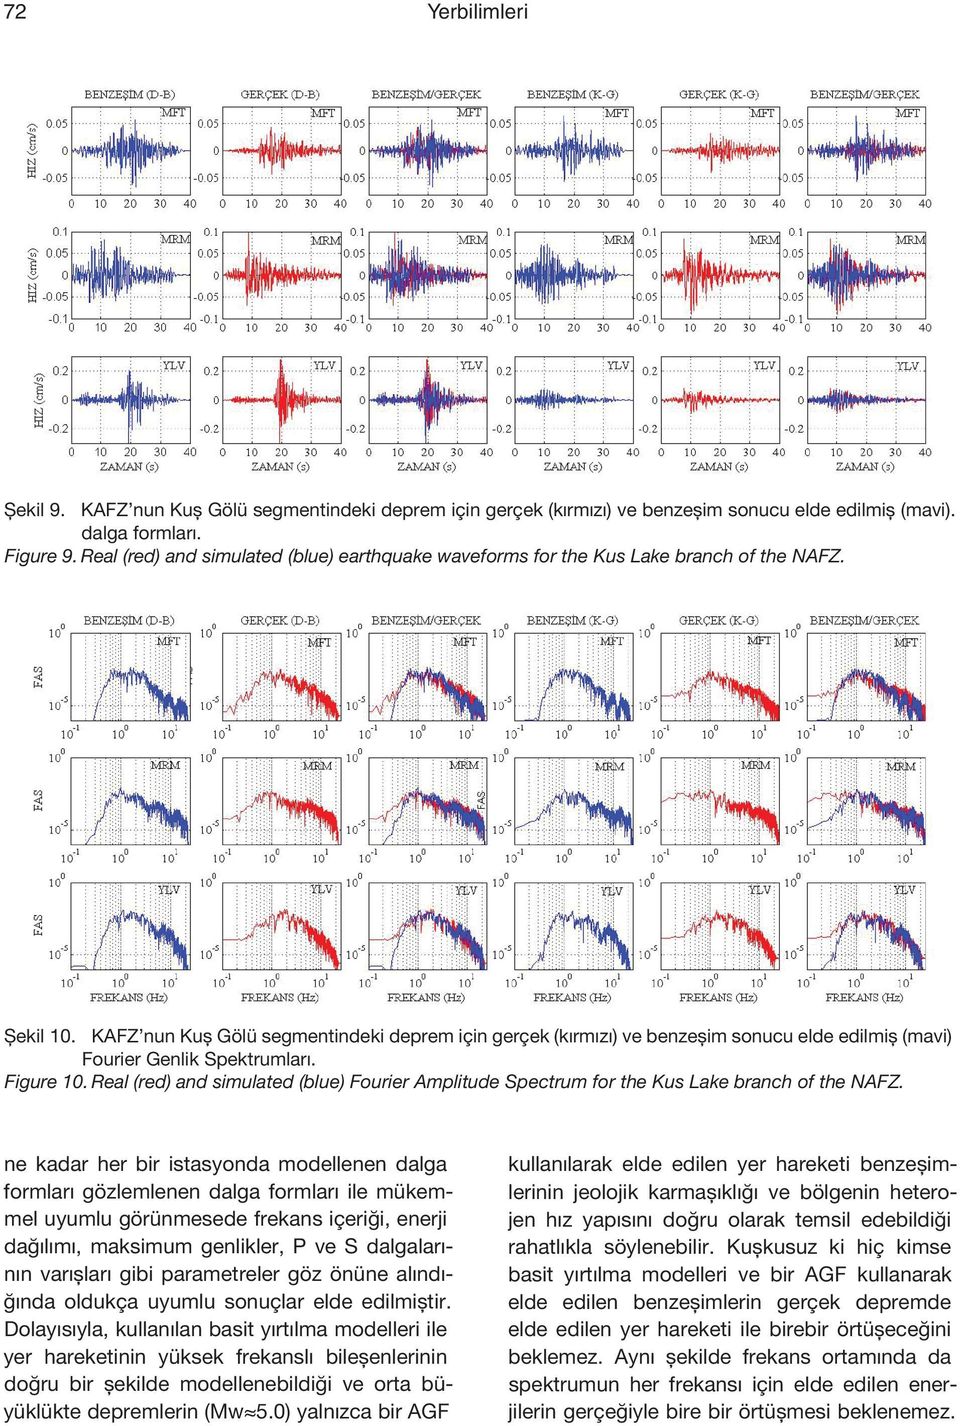 KAFZ nun Kuş Gölü segmentindeki deprem için gerçek (kırmızı) ve benzeşim sonucu elde edilmiş (mavi) Fourier Genlik Spektrumları. Figure 10.